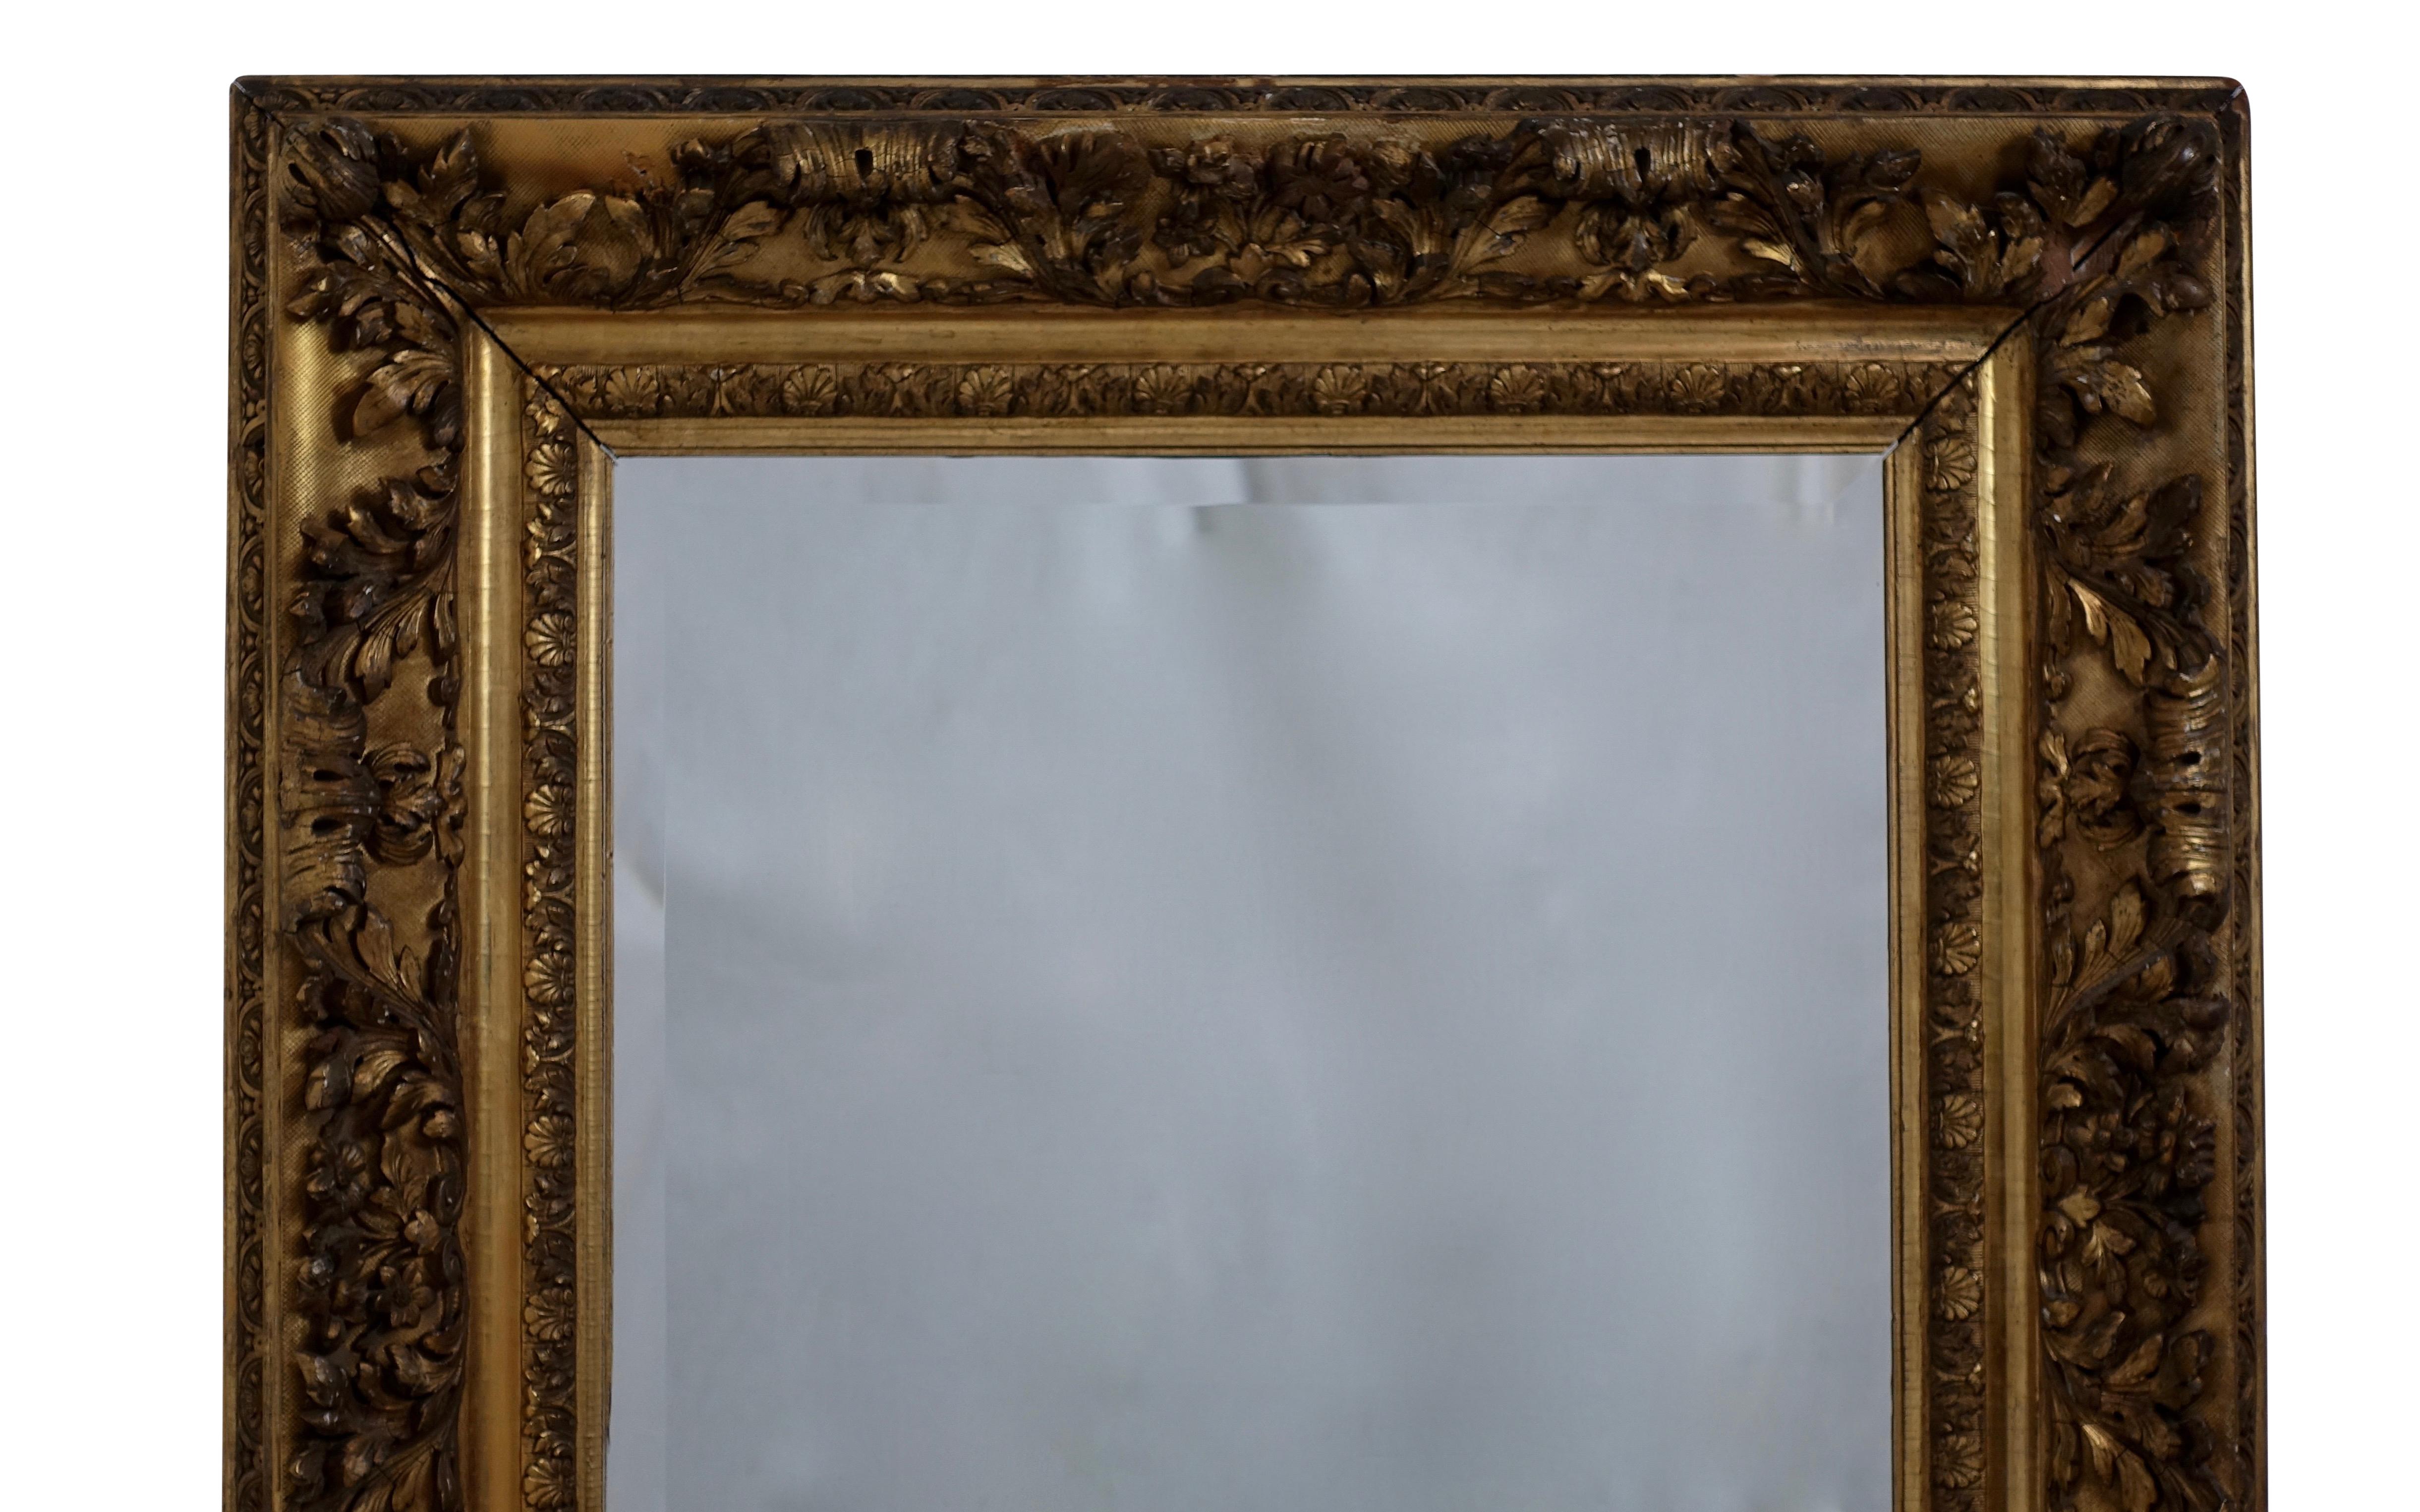 Einzigartiger vergoldeter Rahmen mit Blumen und Akanthusblättern und abgeschrägtem Glasspiegel. Englisch, 19. Jahrhundert.
Etikett auf der Rückseite. Spiegel eines späteren Datums.